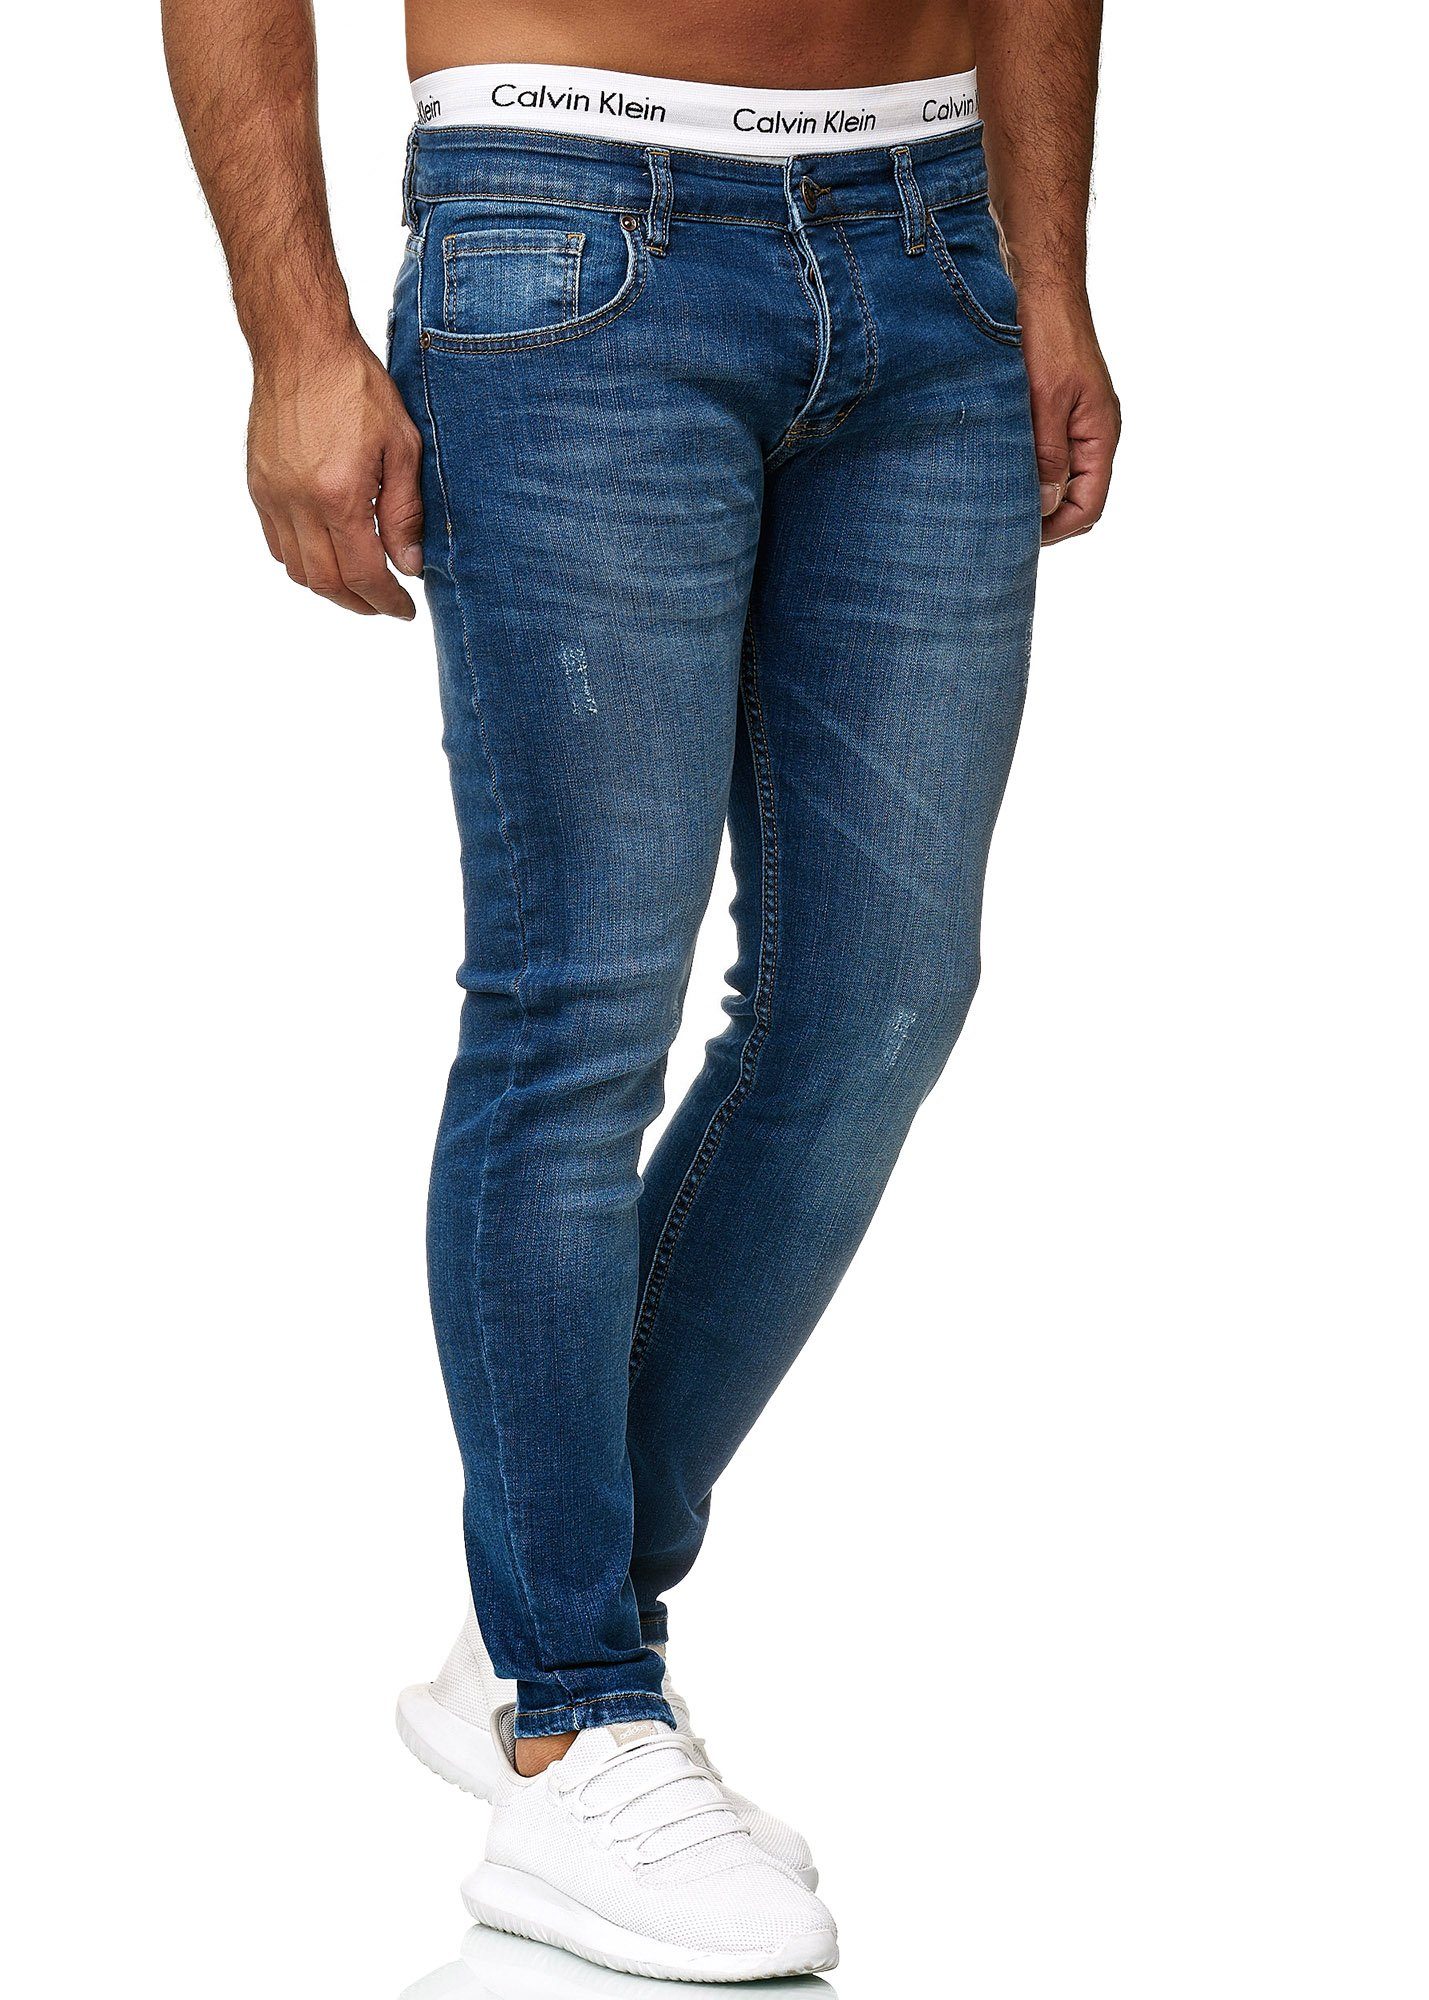 Used 614 Fit Blue Hose Jeanshose Designer Basic Jeans Regular Skinny-fit-Jeans Code47 Herren Code47 Light Skinny